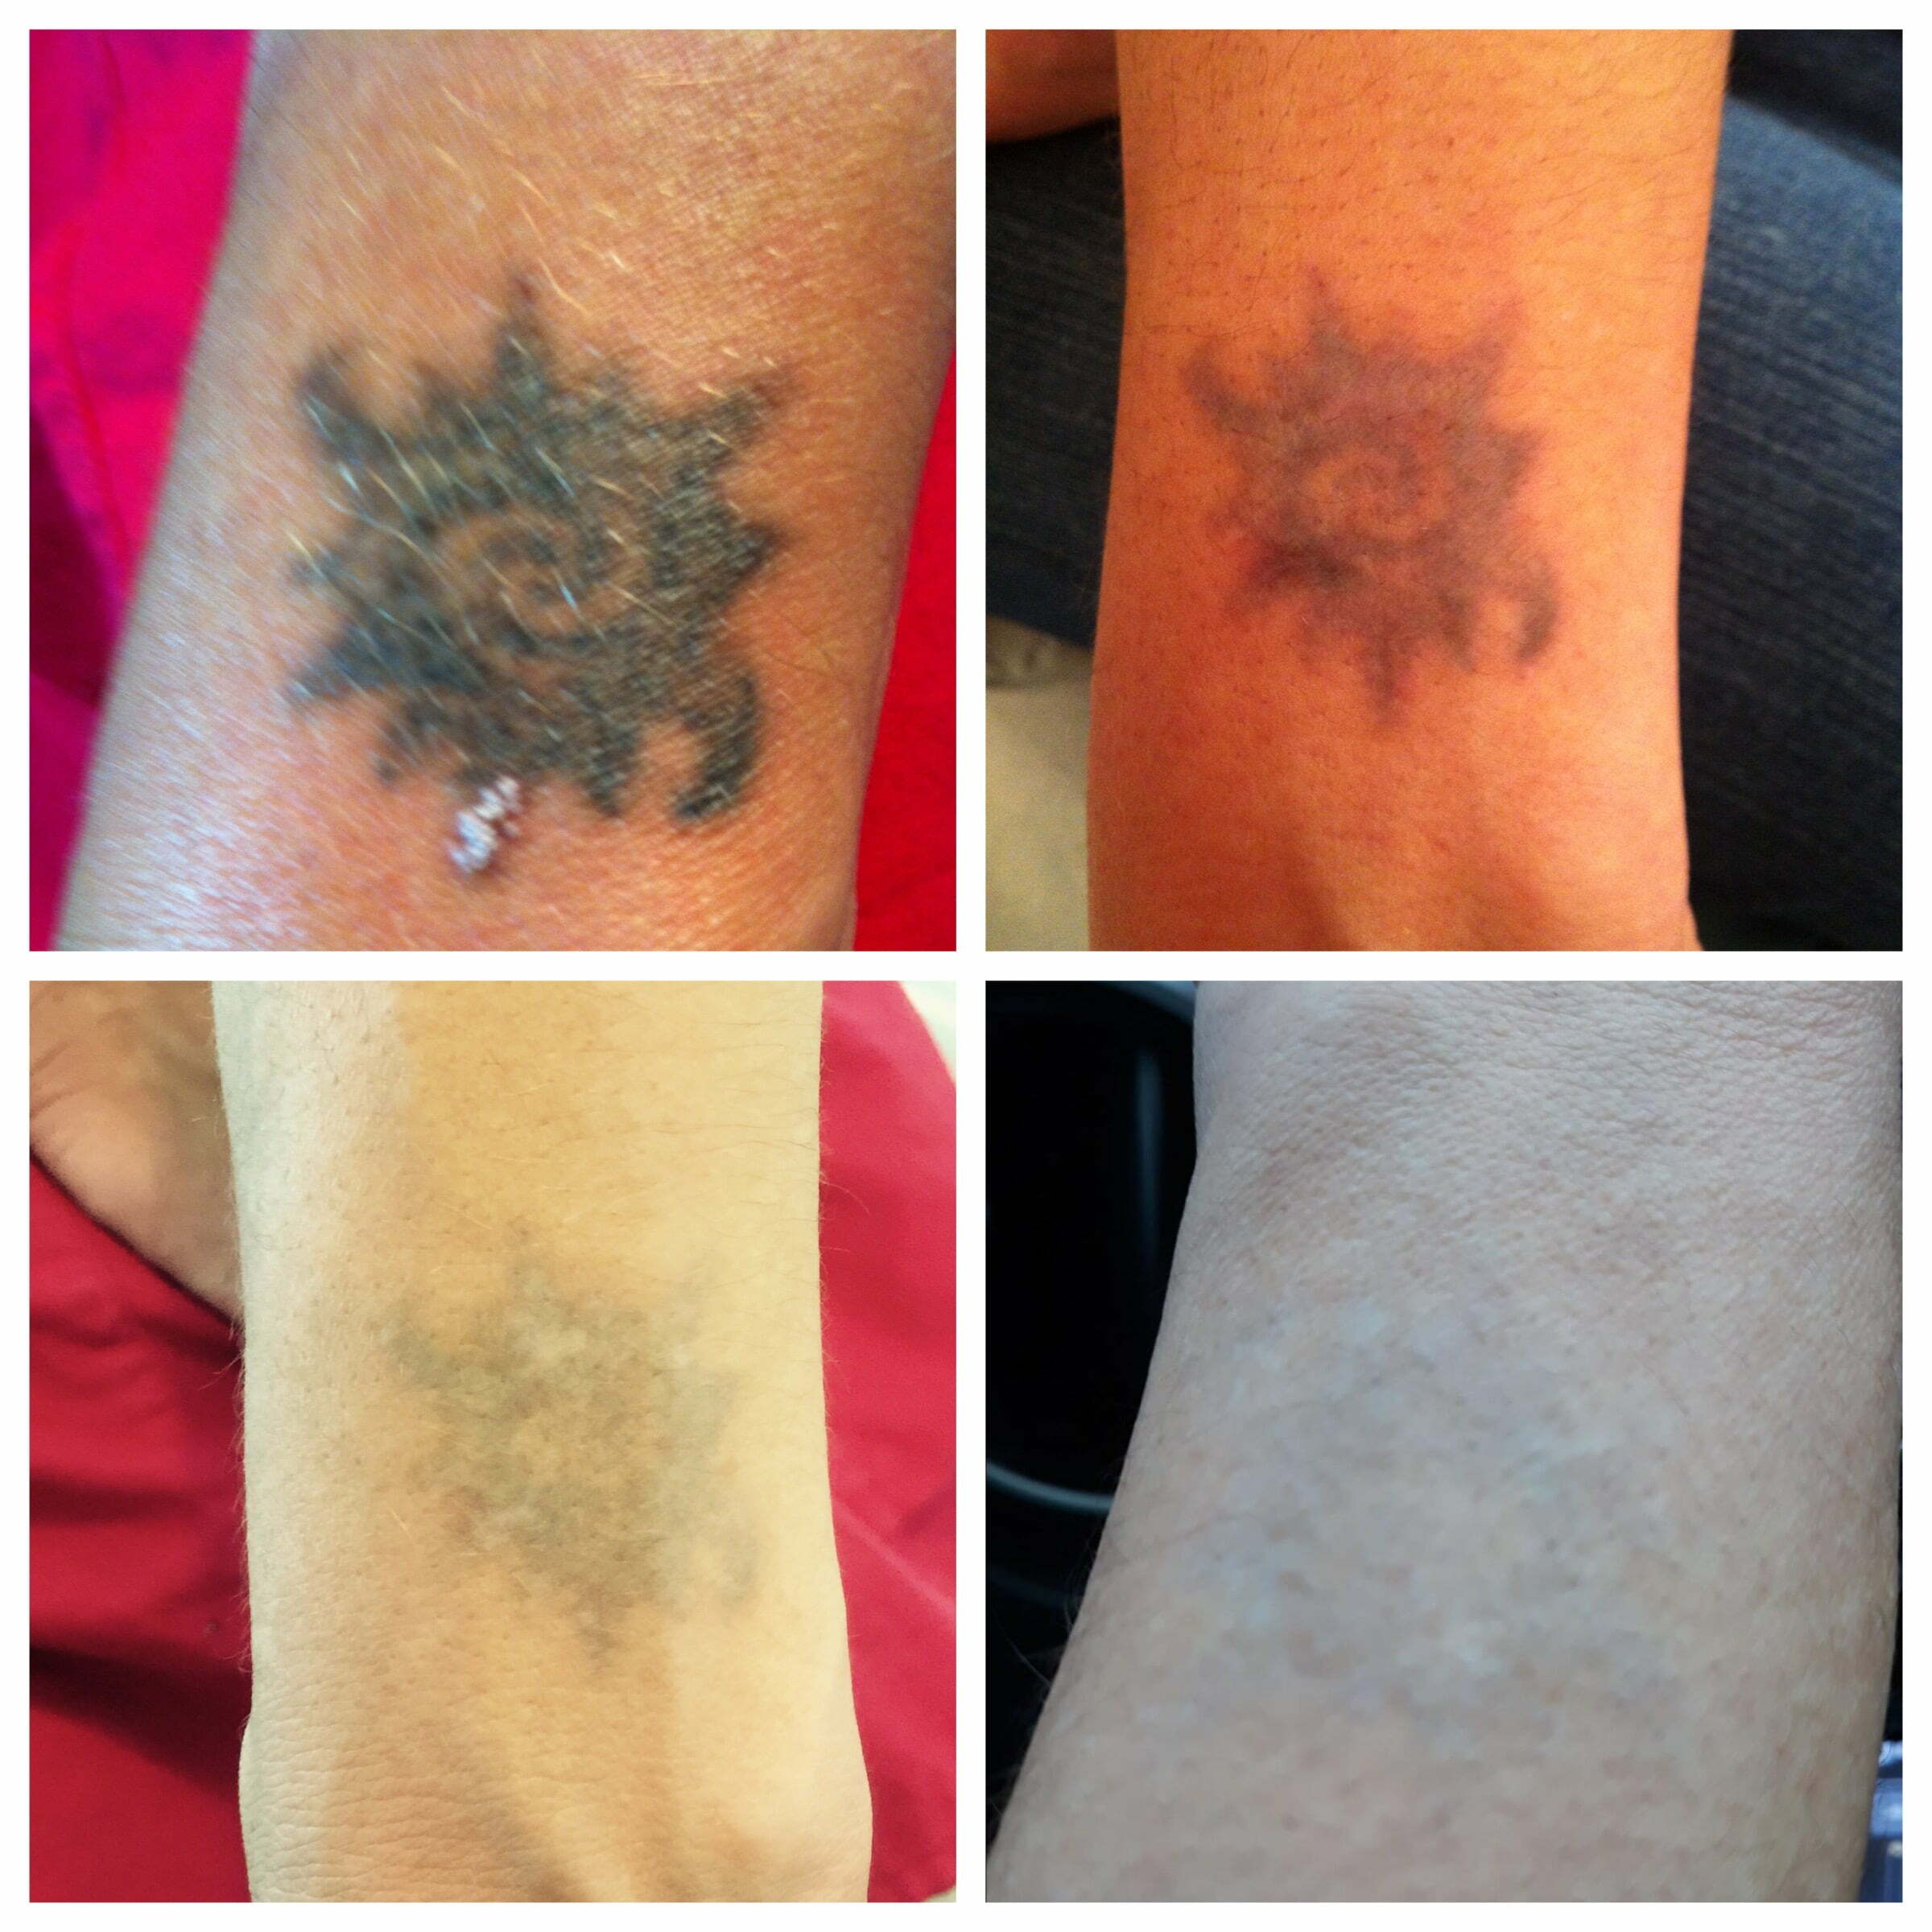 Tattoo Removal - Skin Beautiful